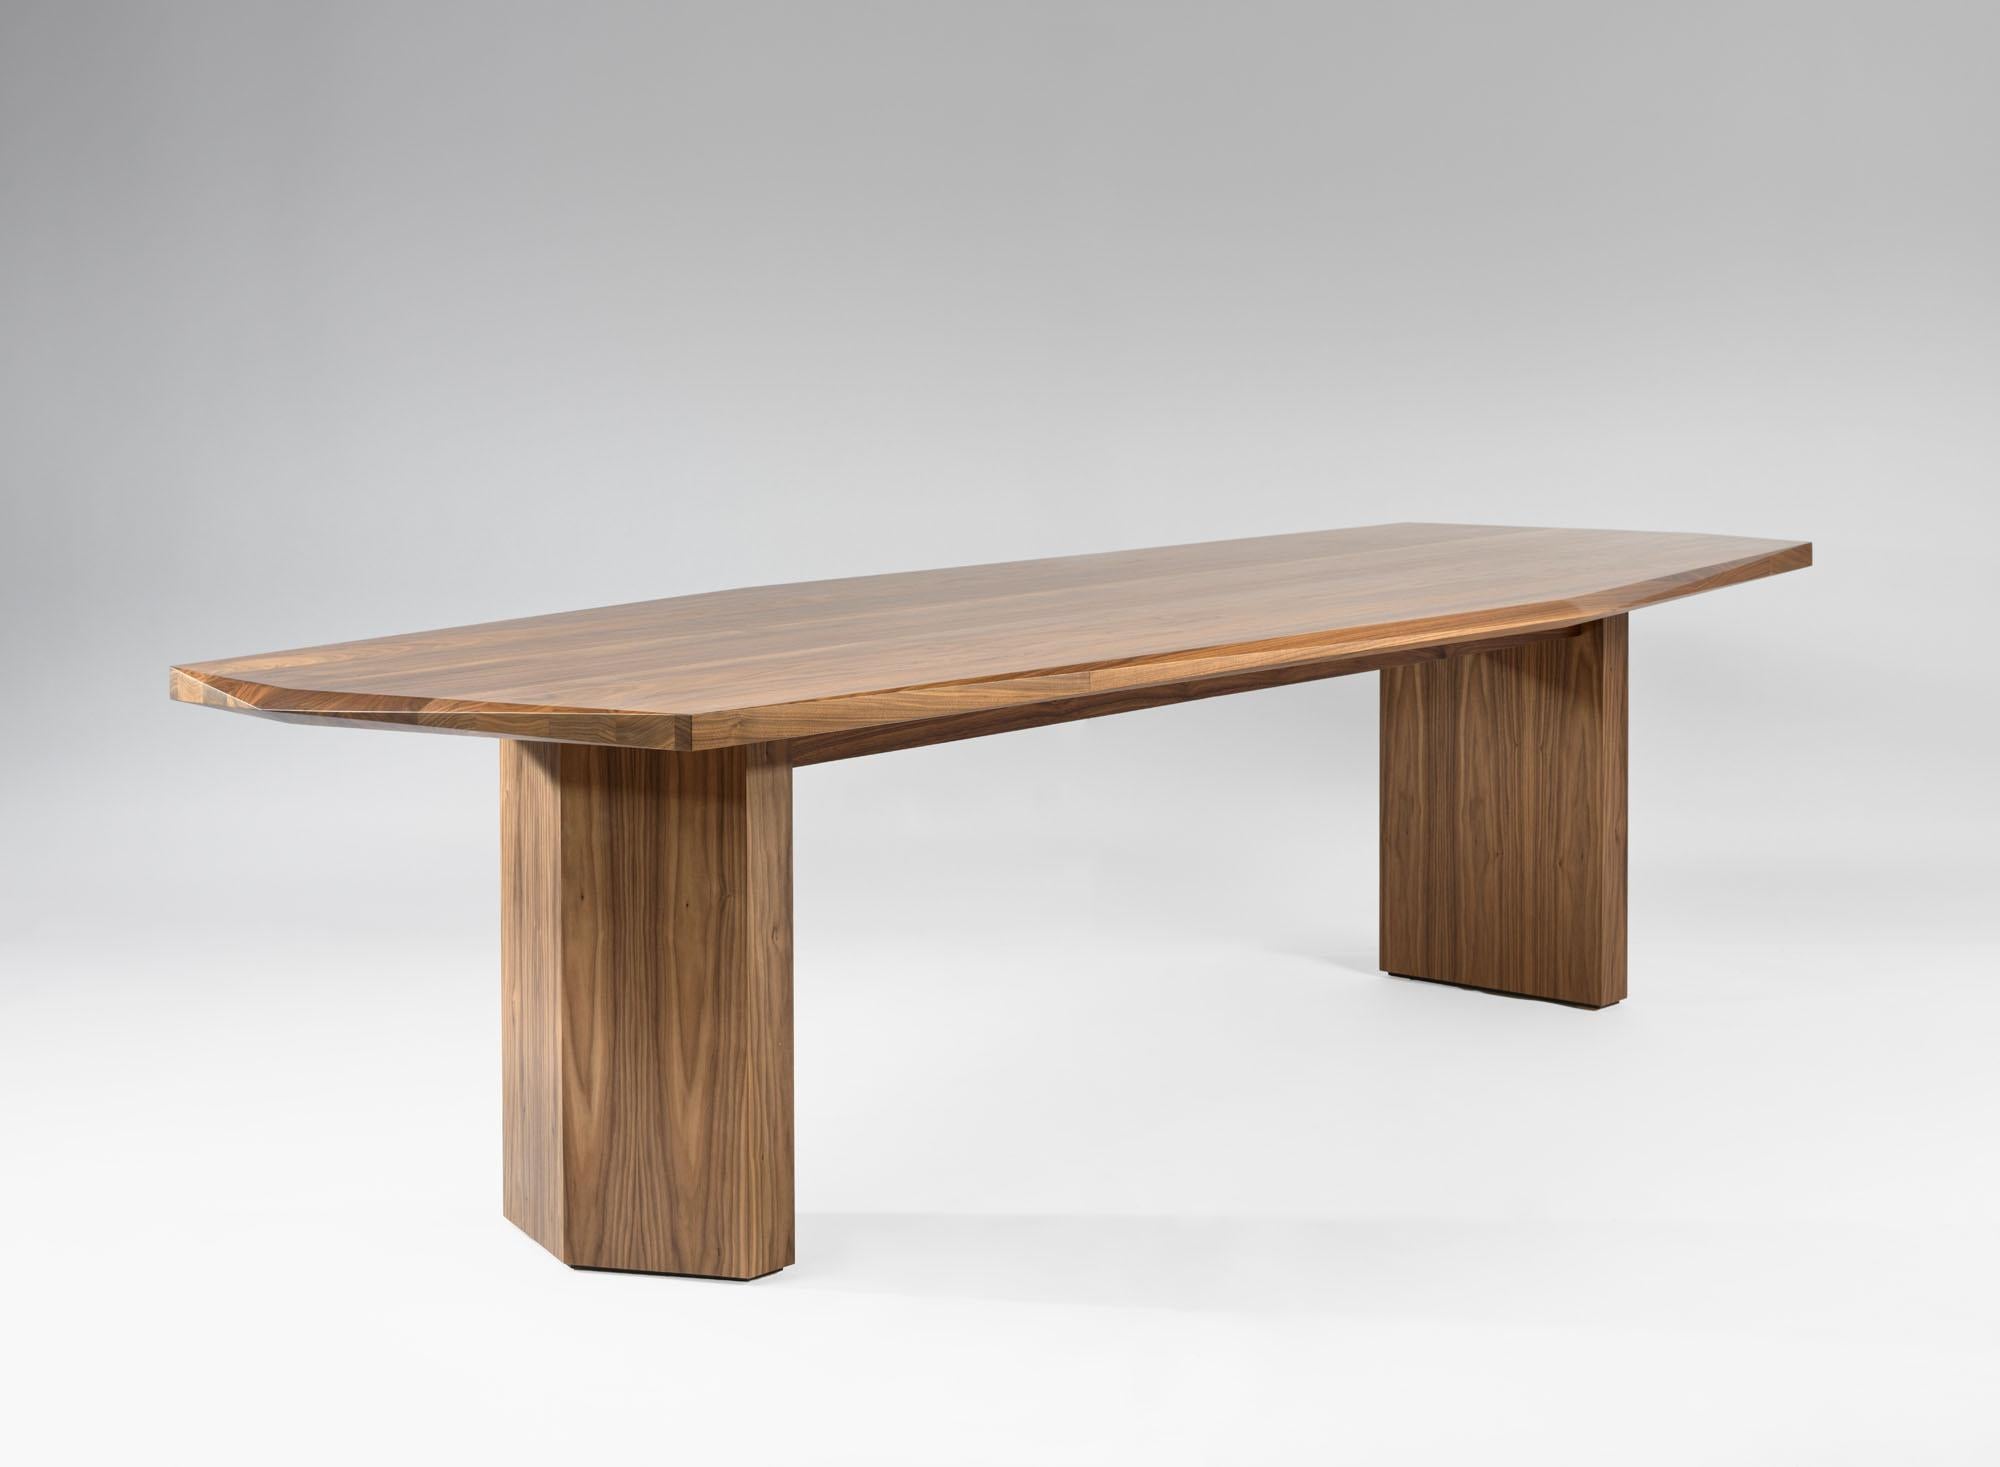 Table Hera 300 de Tim Vranken
MATERIAL : Noyer américain
Dimensions : L 300 x L 111 x H 75 cm

Également disponible dans d'autres types de bois. 

Héra, un jeu de lignes et de formes, sans la moindre fioriture. 

Tim Vranken est un designer de